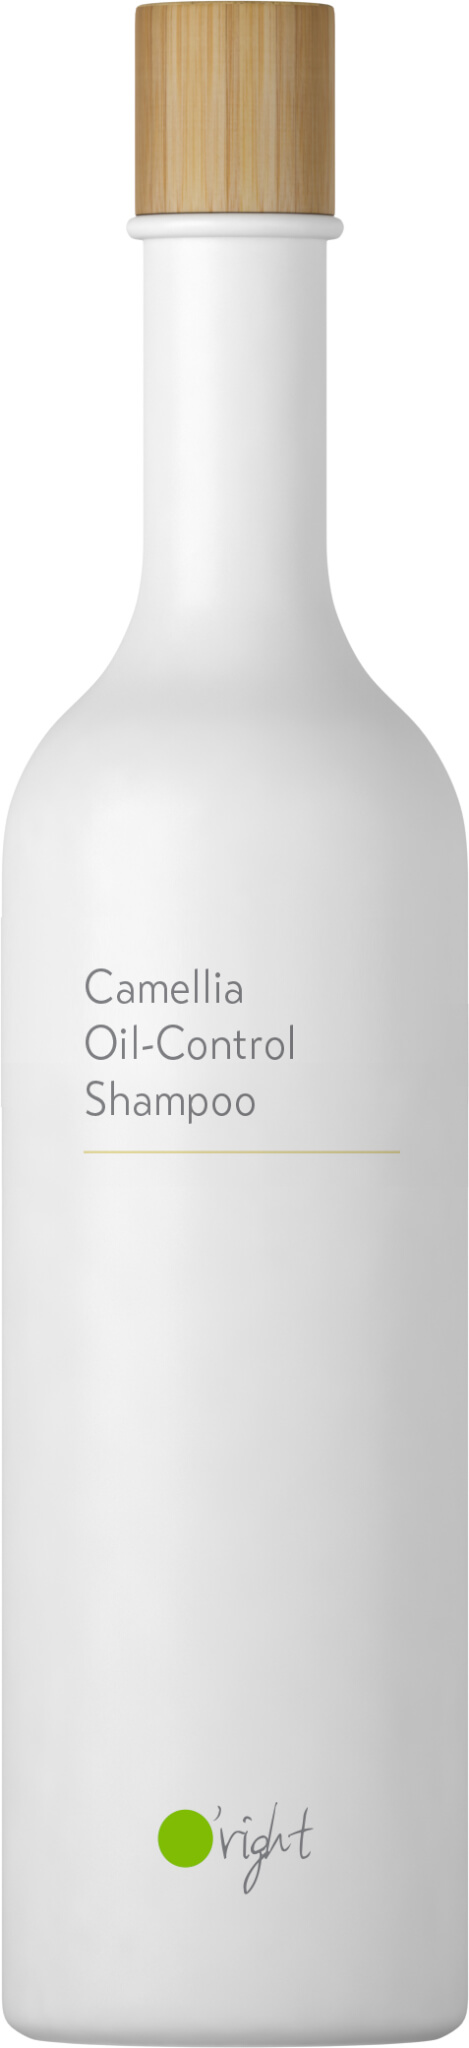 Camellia Oil Control Shampoo 400ml 2020